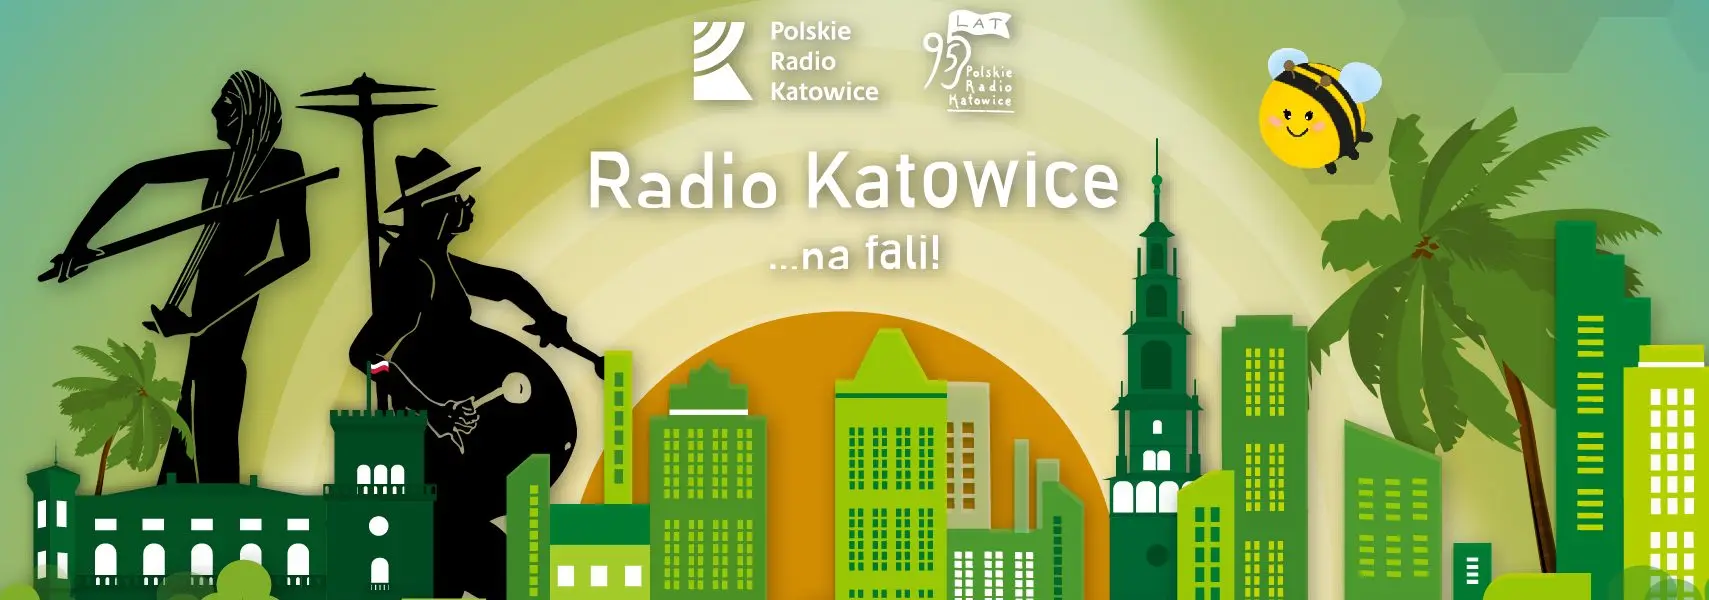 radio dąbrowa górnicza - Ile lat ma Dąbrowa Górnicza